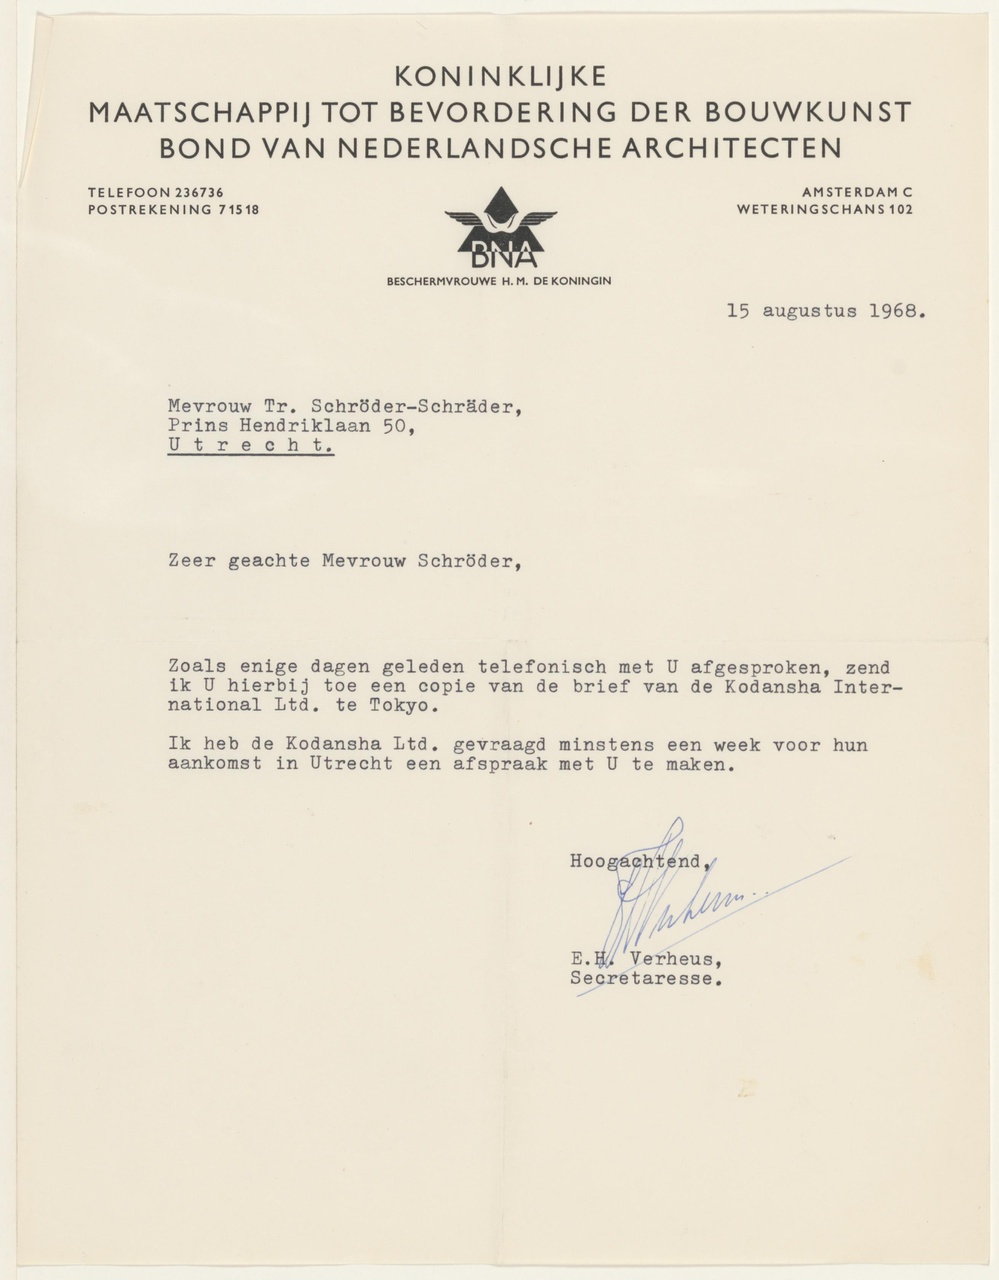 Brief van E.H. Verheus / BNA aan T. Schröder